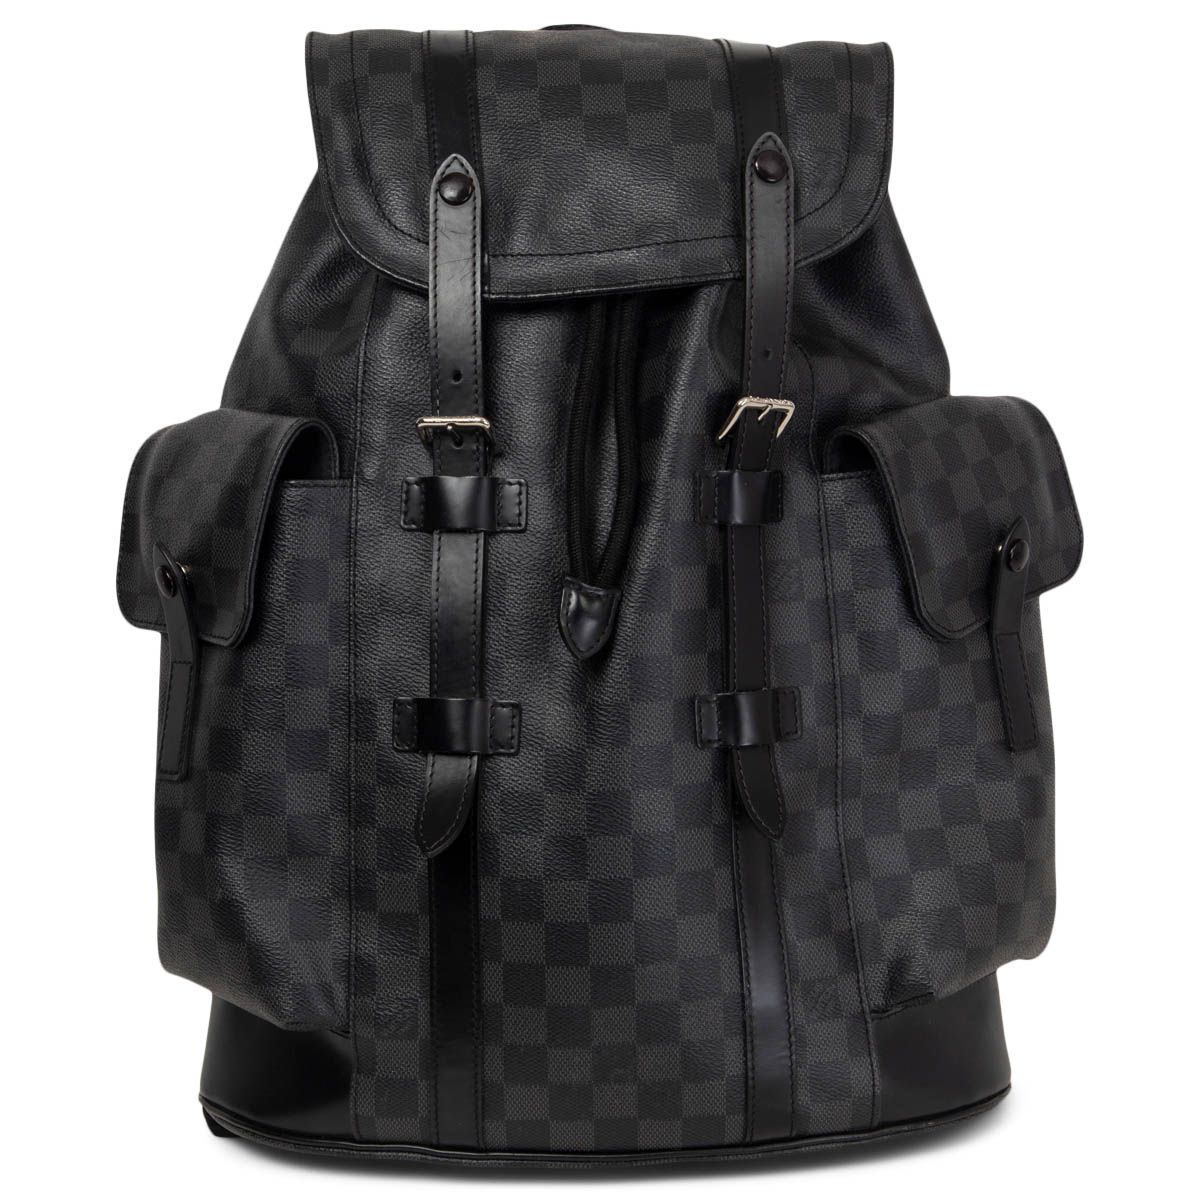 Louis Vuitton Christopher PM Backpack Graphite Damier Canvas Black